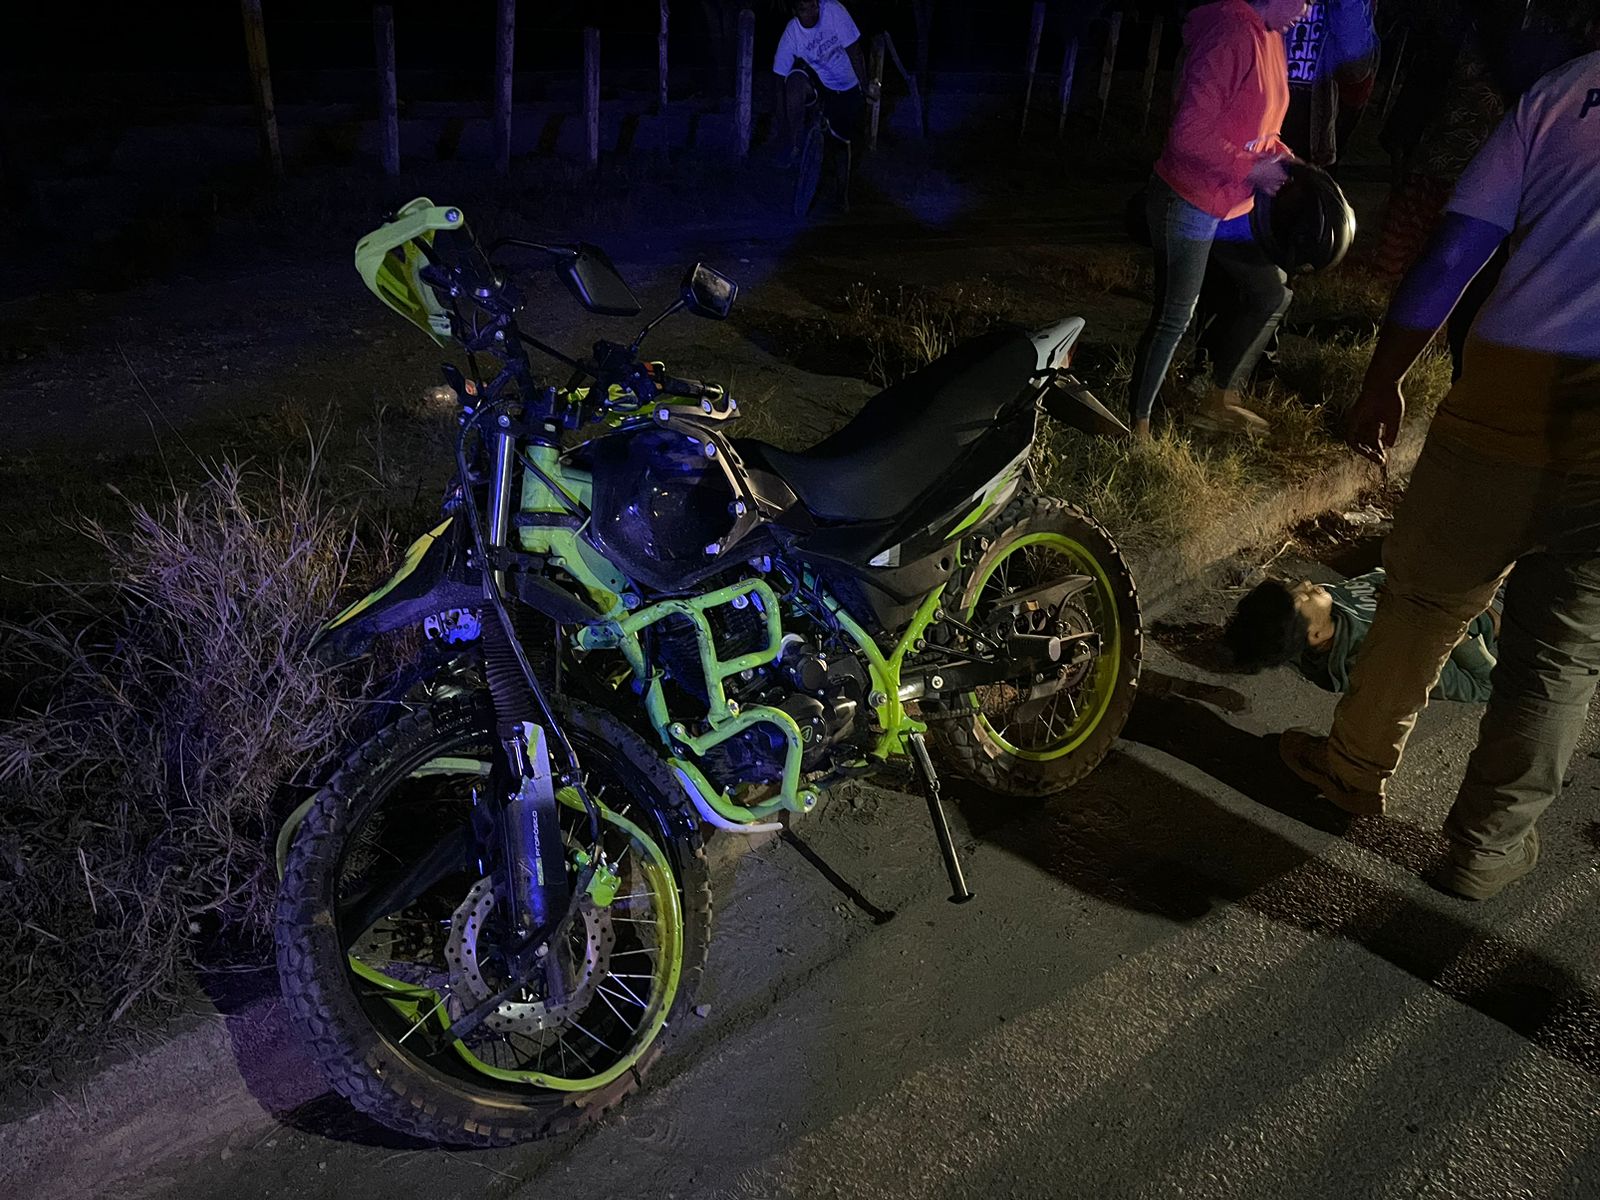 Motocicleta en la que viajaban dos menores de edad que resultaron lesionados